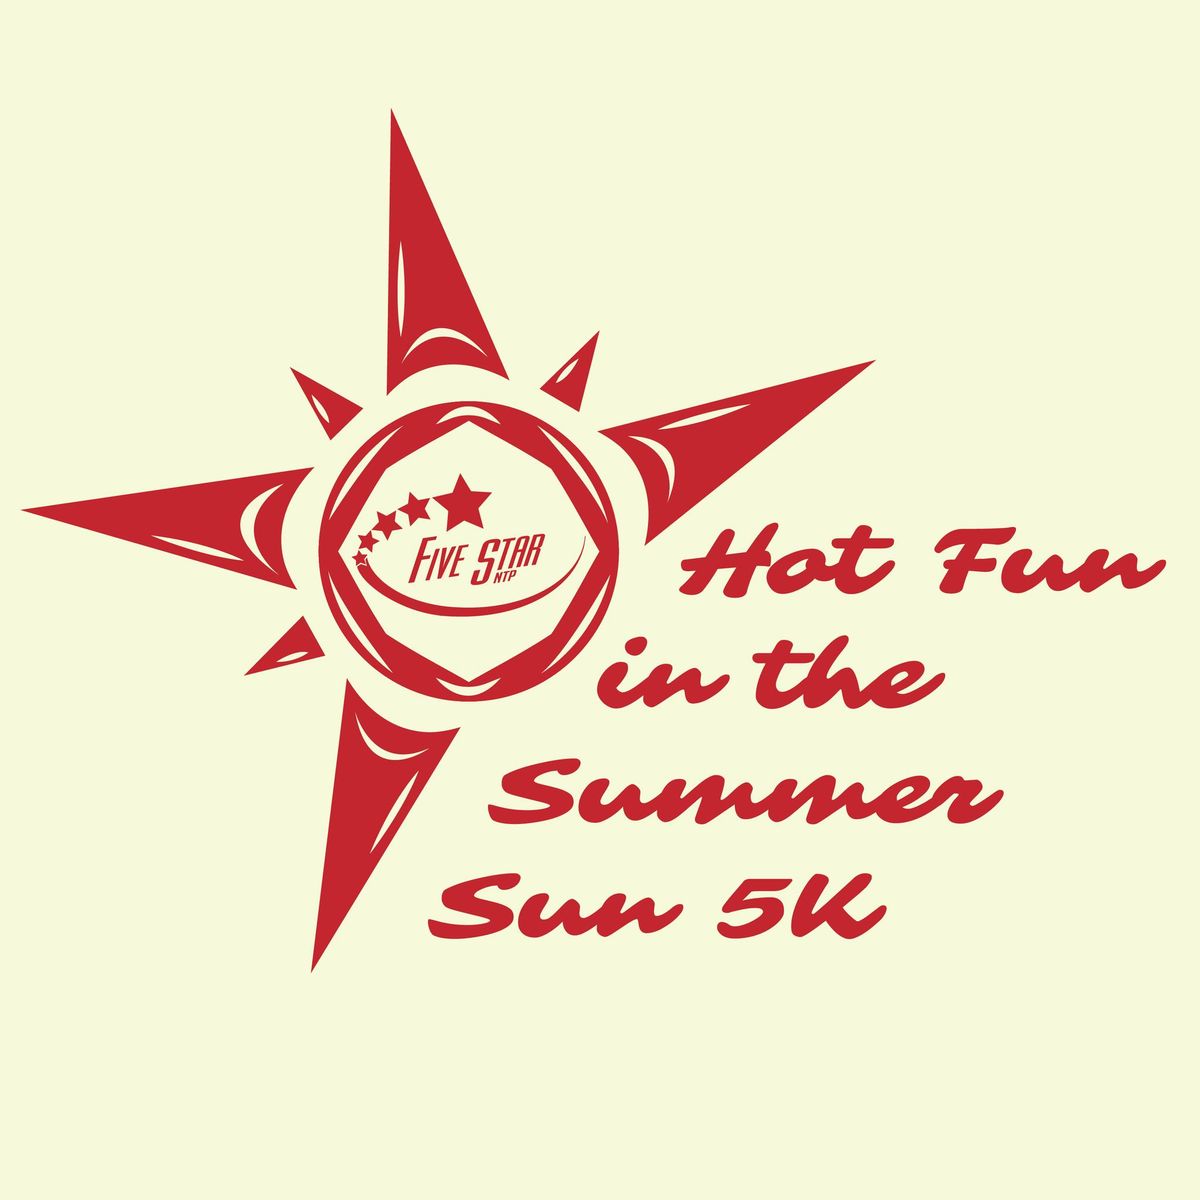 Hot Fun in the Summer Sun 5K - Atlanta